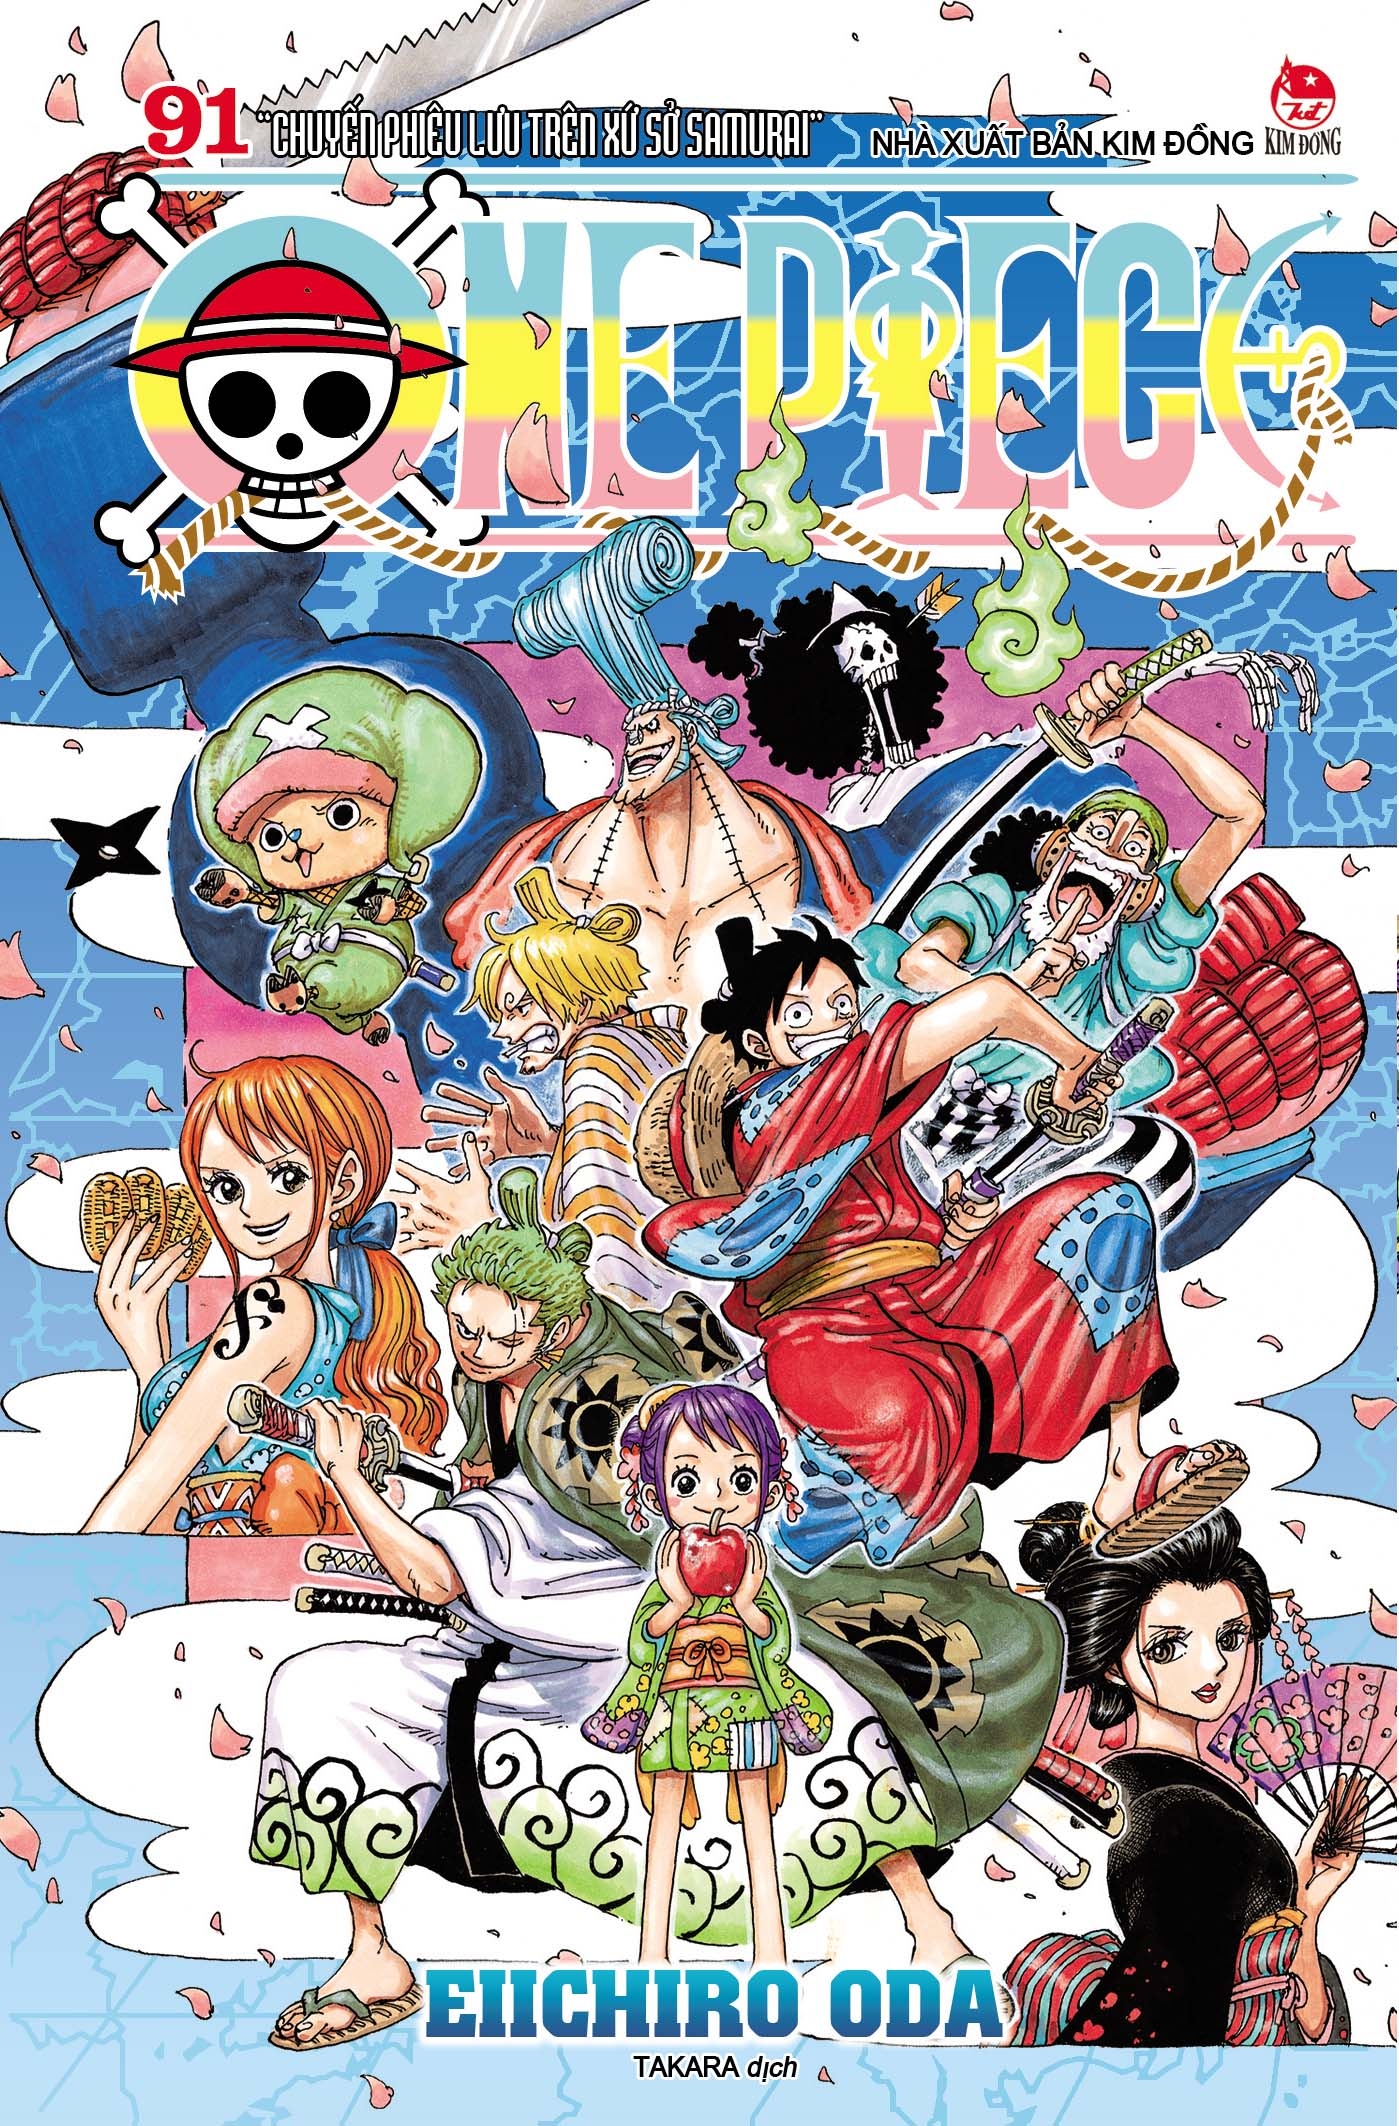 One Piece tập 91 đã được ra mắt với một bìa gập đầy cuốn hút và bất ngờ. Nếu bạn muốn biết thêm về nội dung của tập này, hãy đến và xem ngay hình ảnh bìa gập đầy bí ẩn và thú vị này!